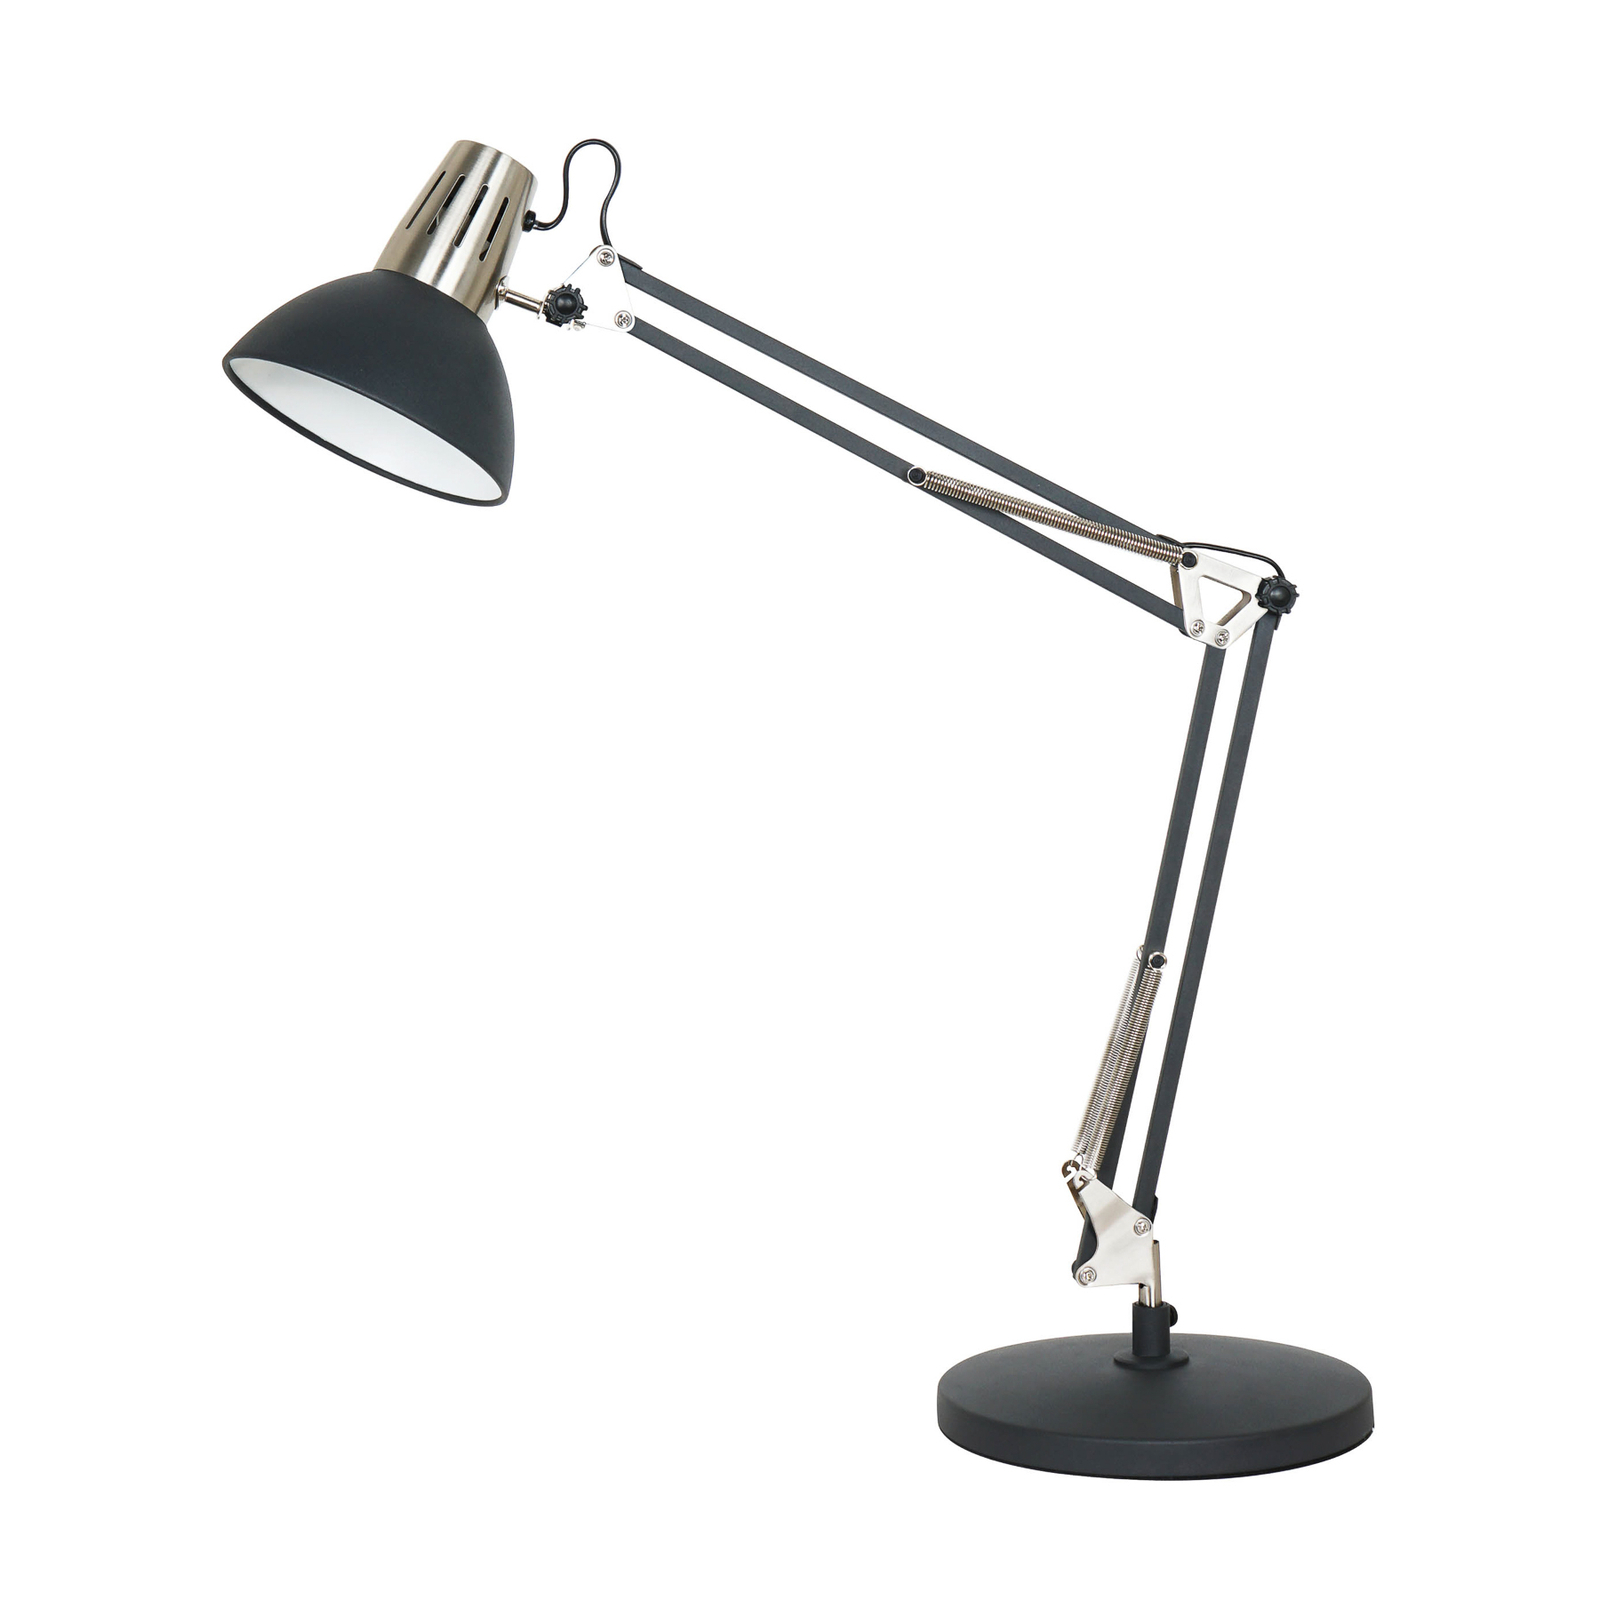 Aluminor Calypsa stolní lampa, černá